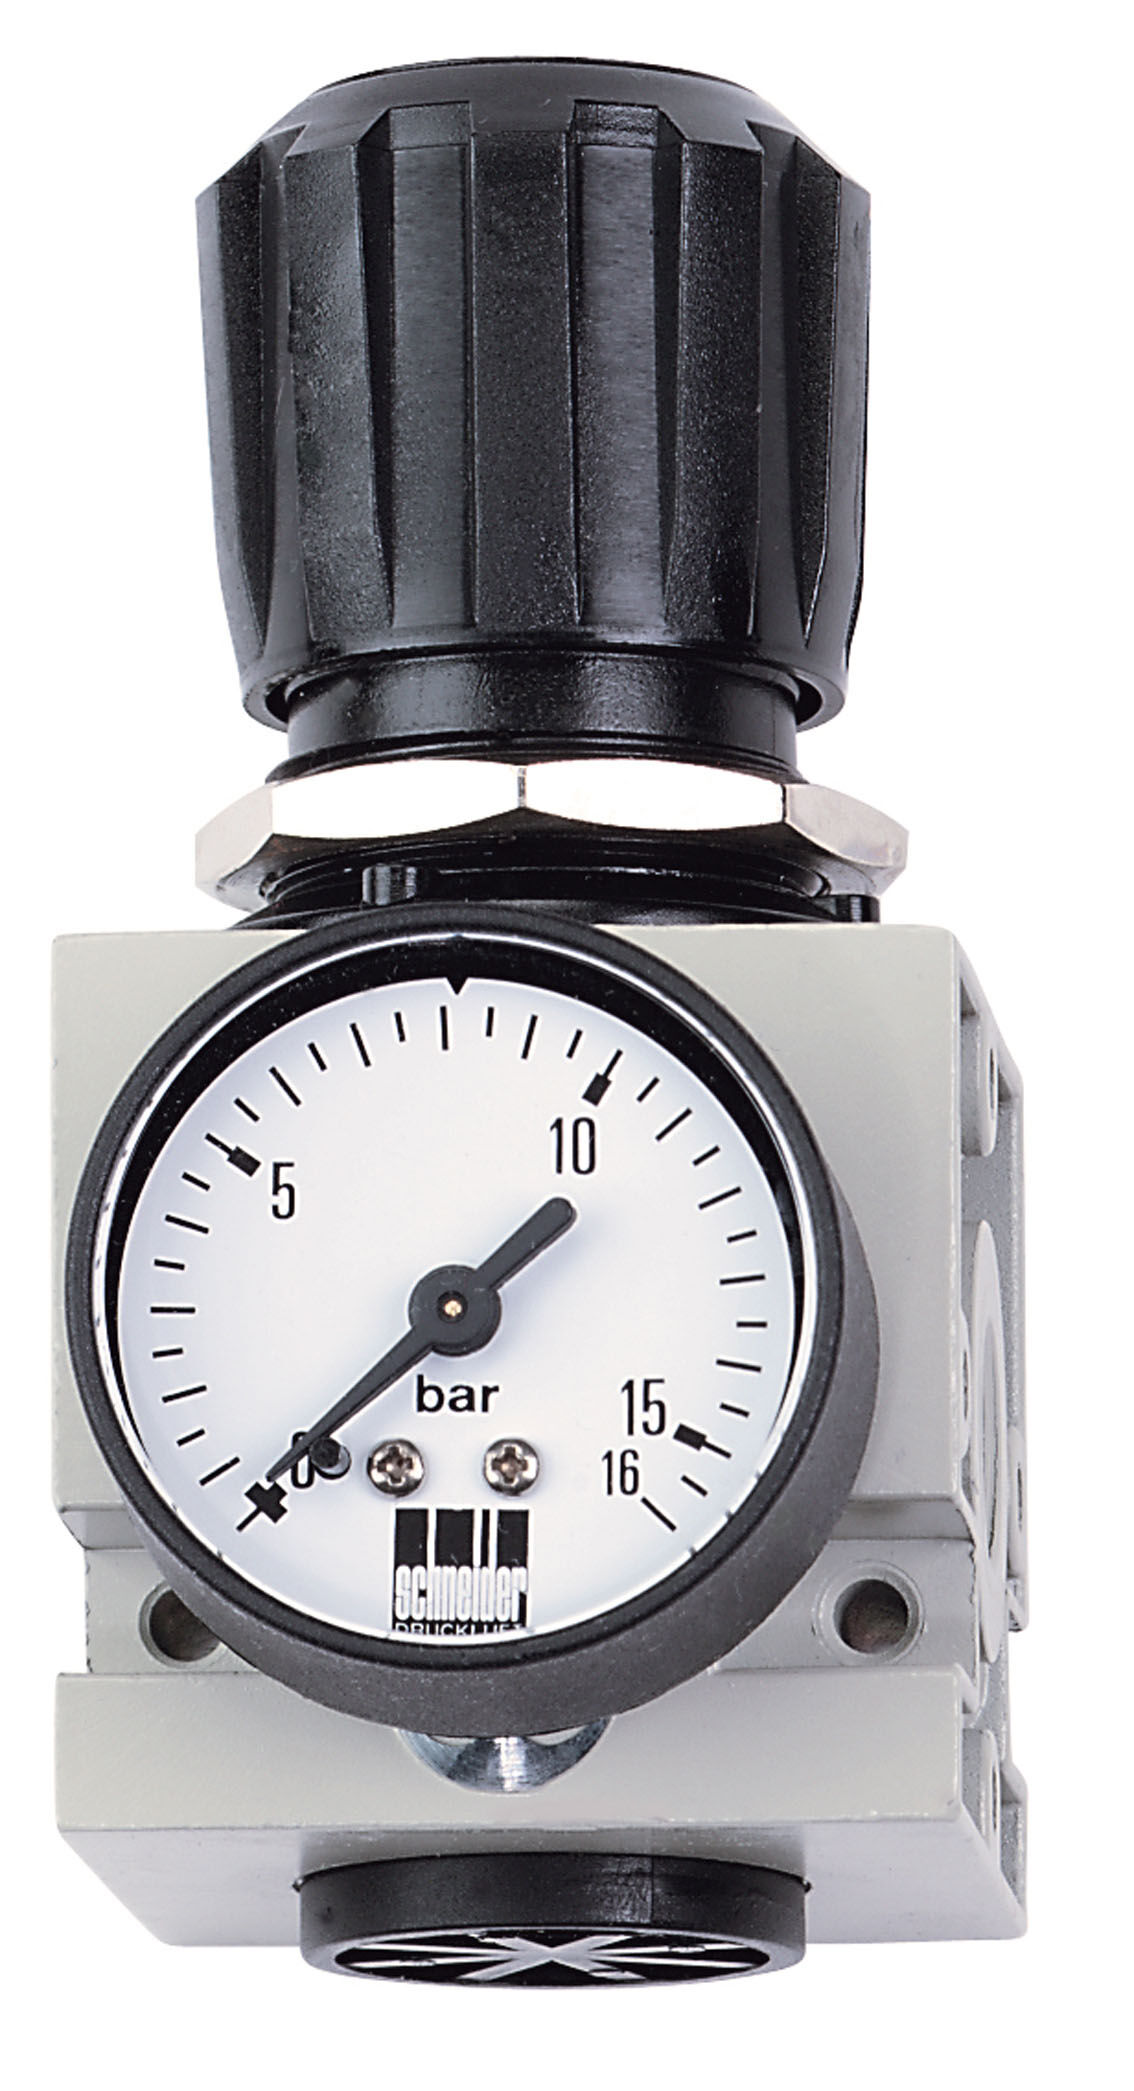 Riduttore di pressione Schneider DM 1 W DGKD602002